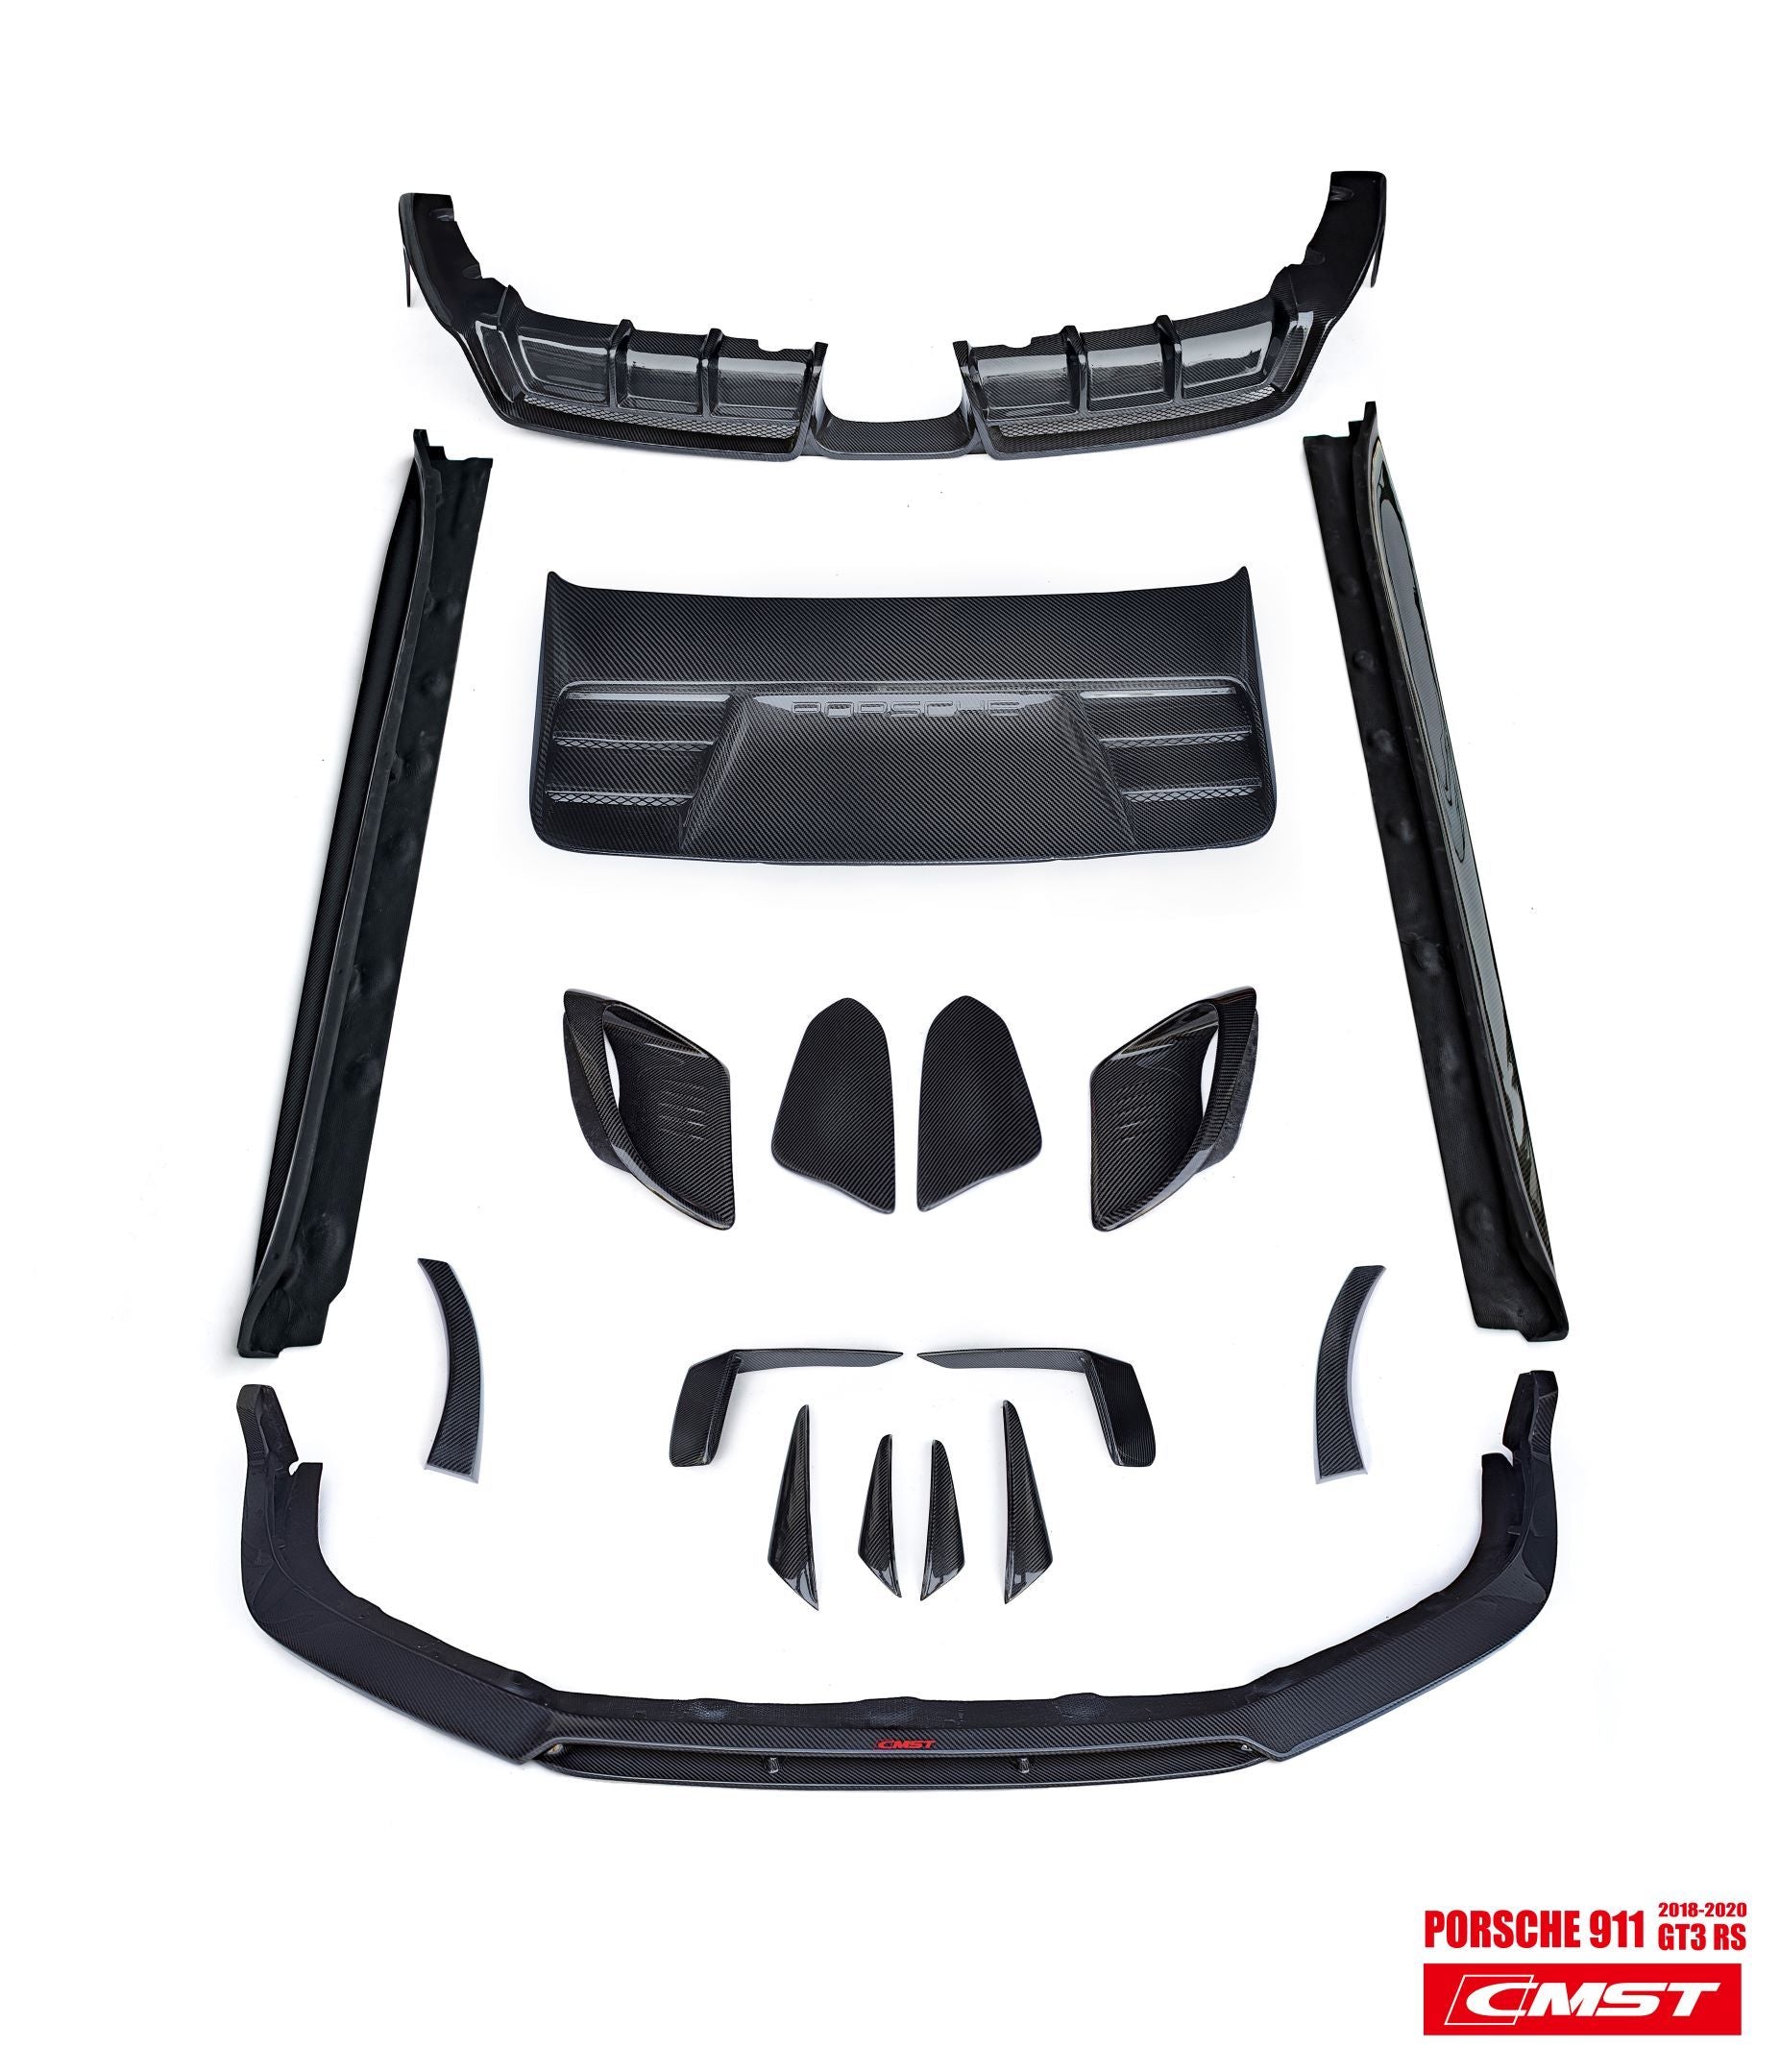 CMST Carbon Fiber Full Body Kit for Porsche 991 991.2 GT3RS